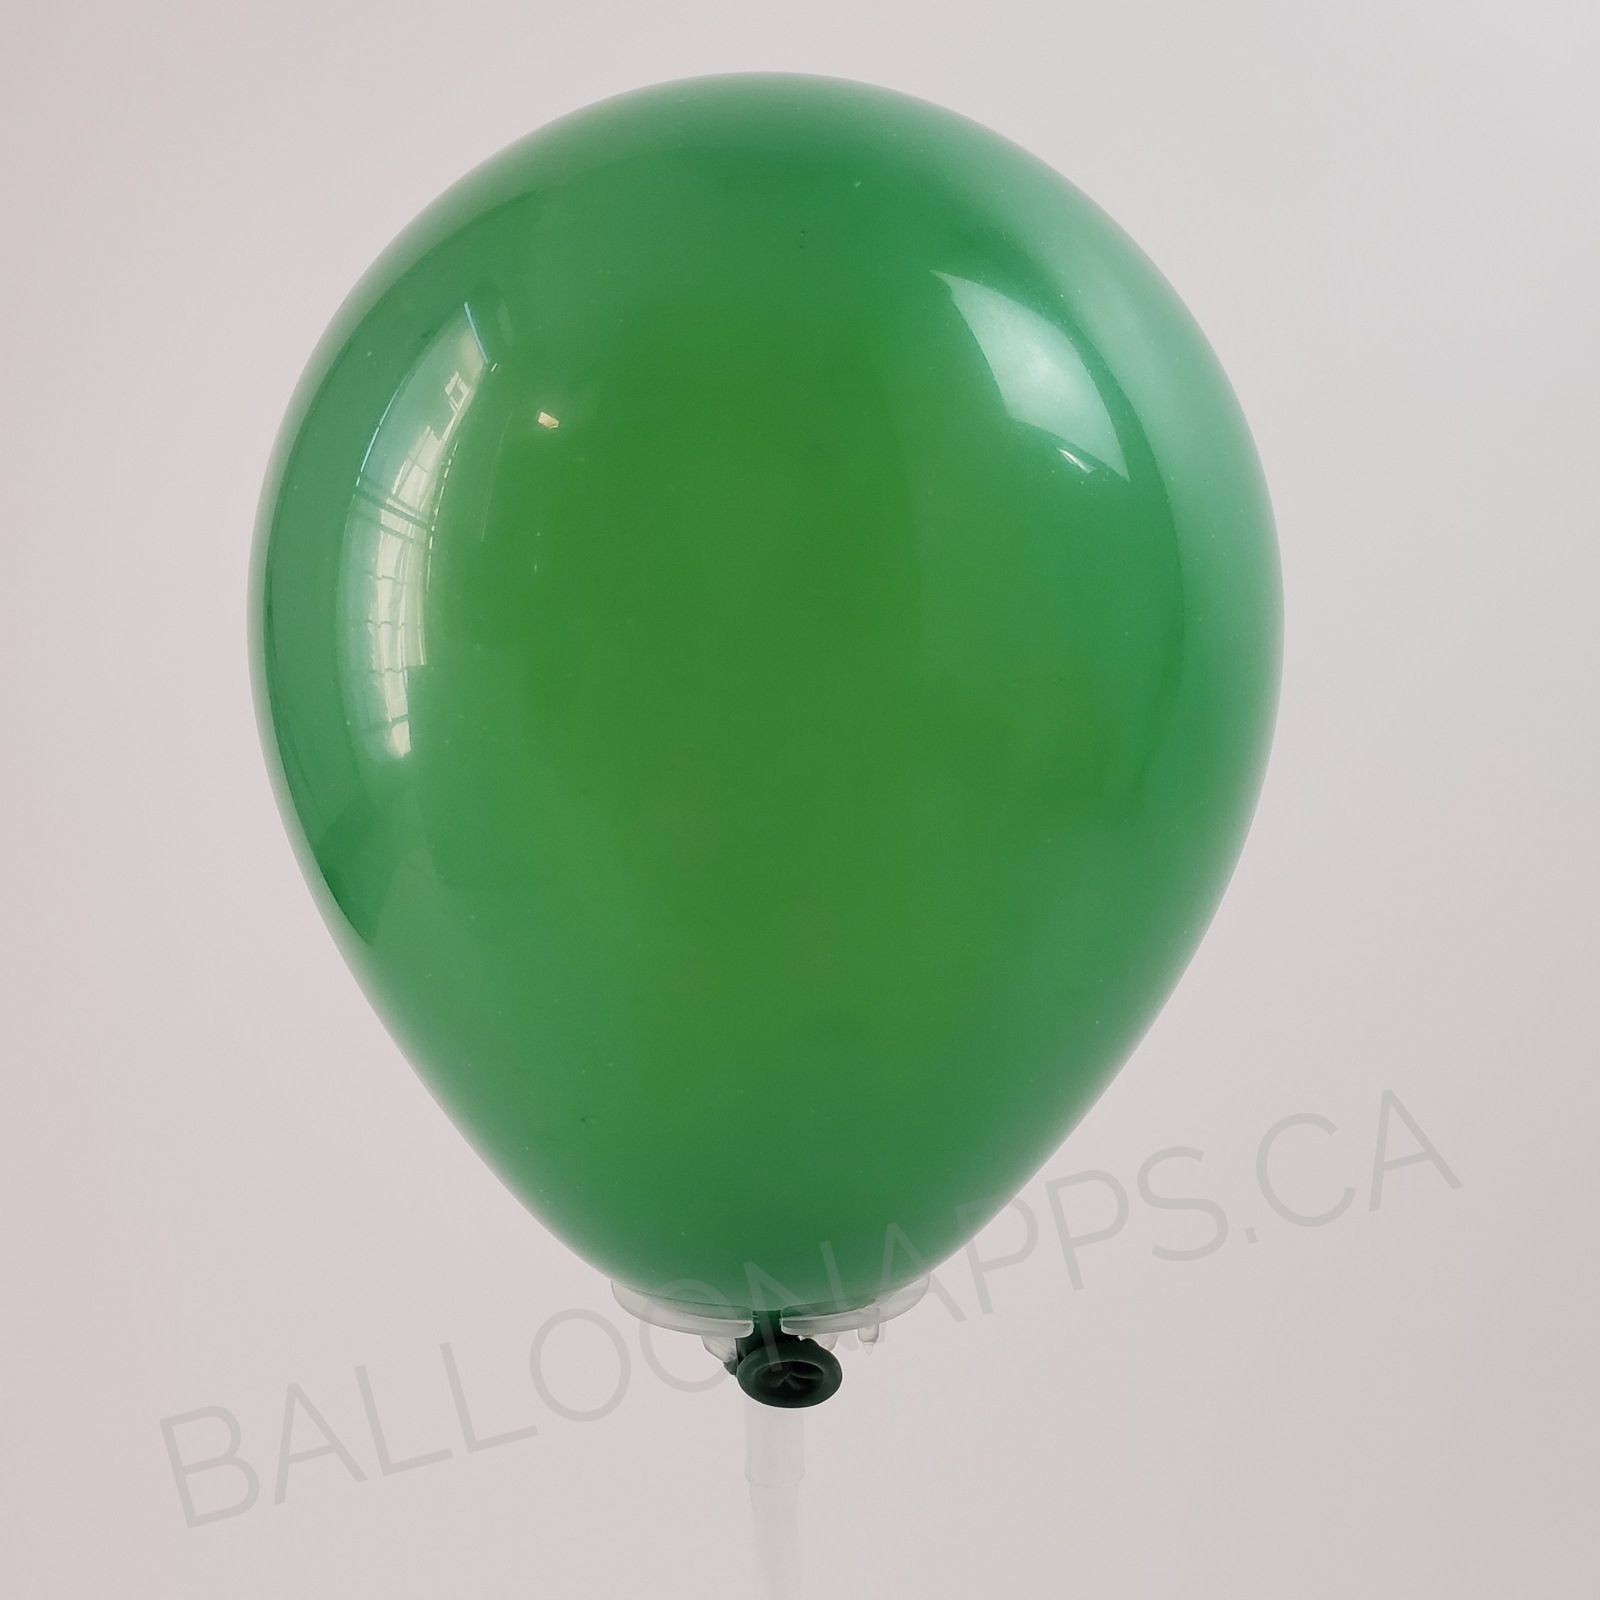 balloon texture Qualatex 260 Standard Green